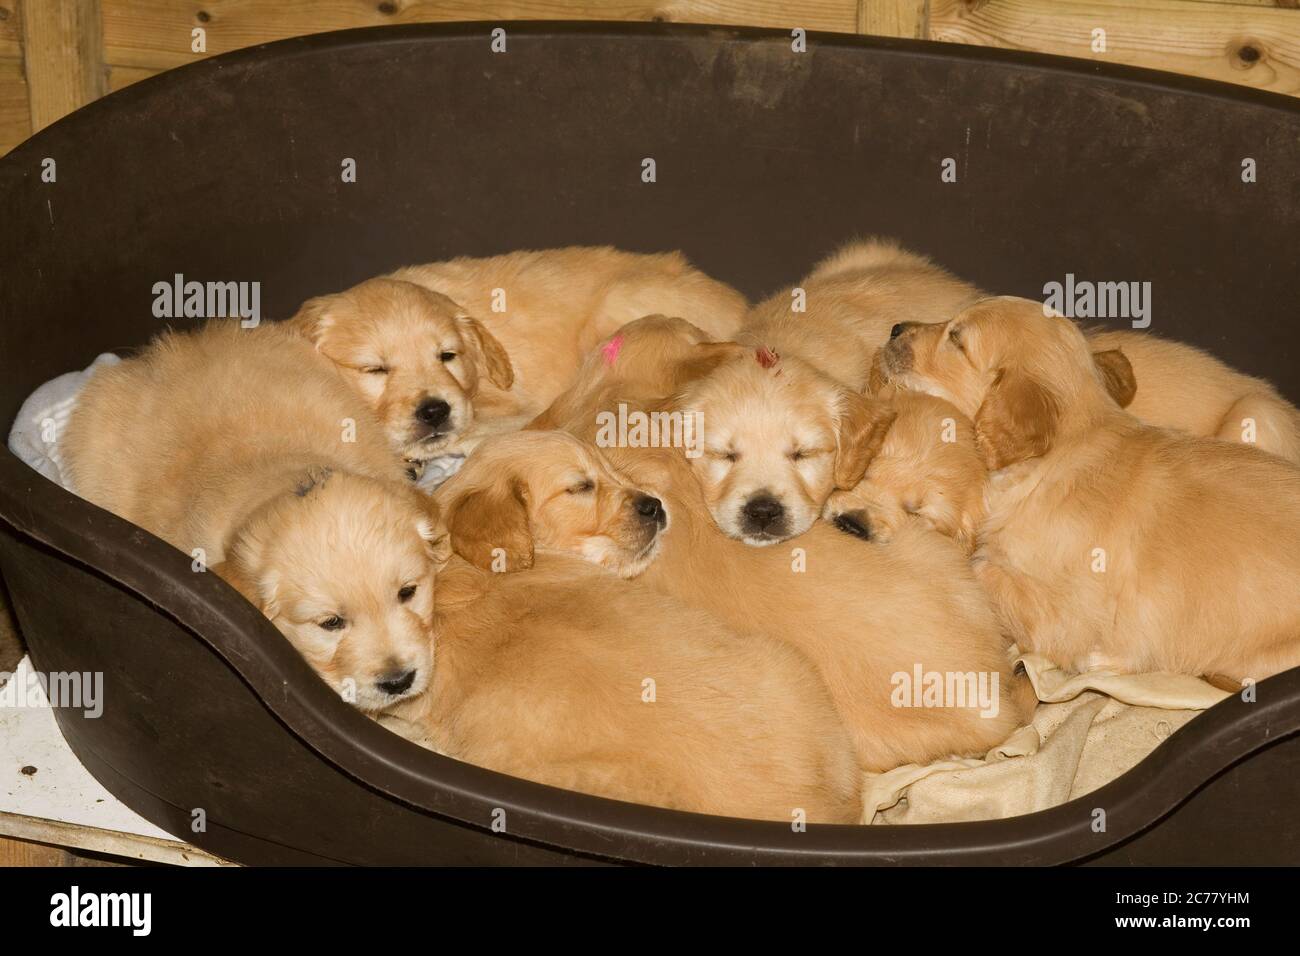 camada de cachorros de oro retriever acostado en una cesta de perro de plástico marrón Foto de stock